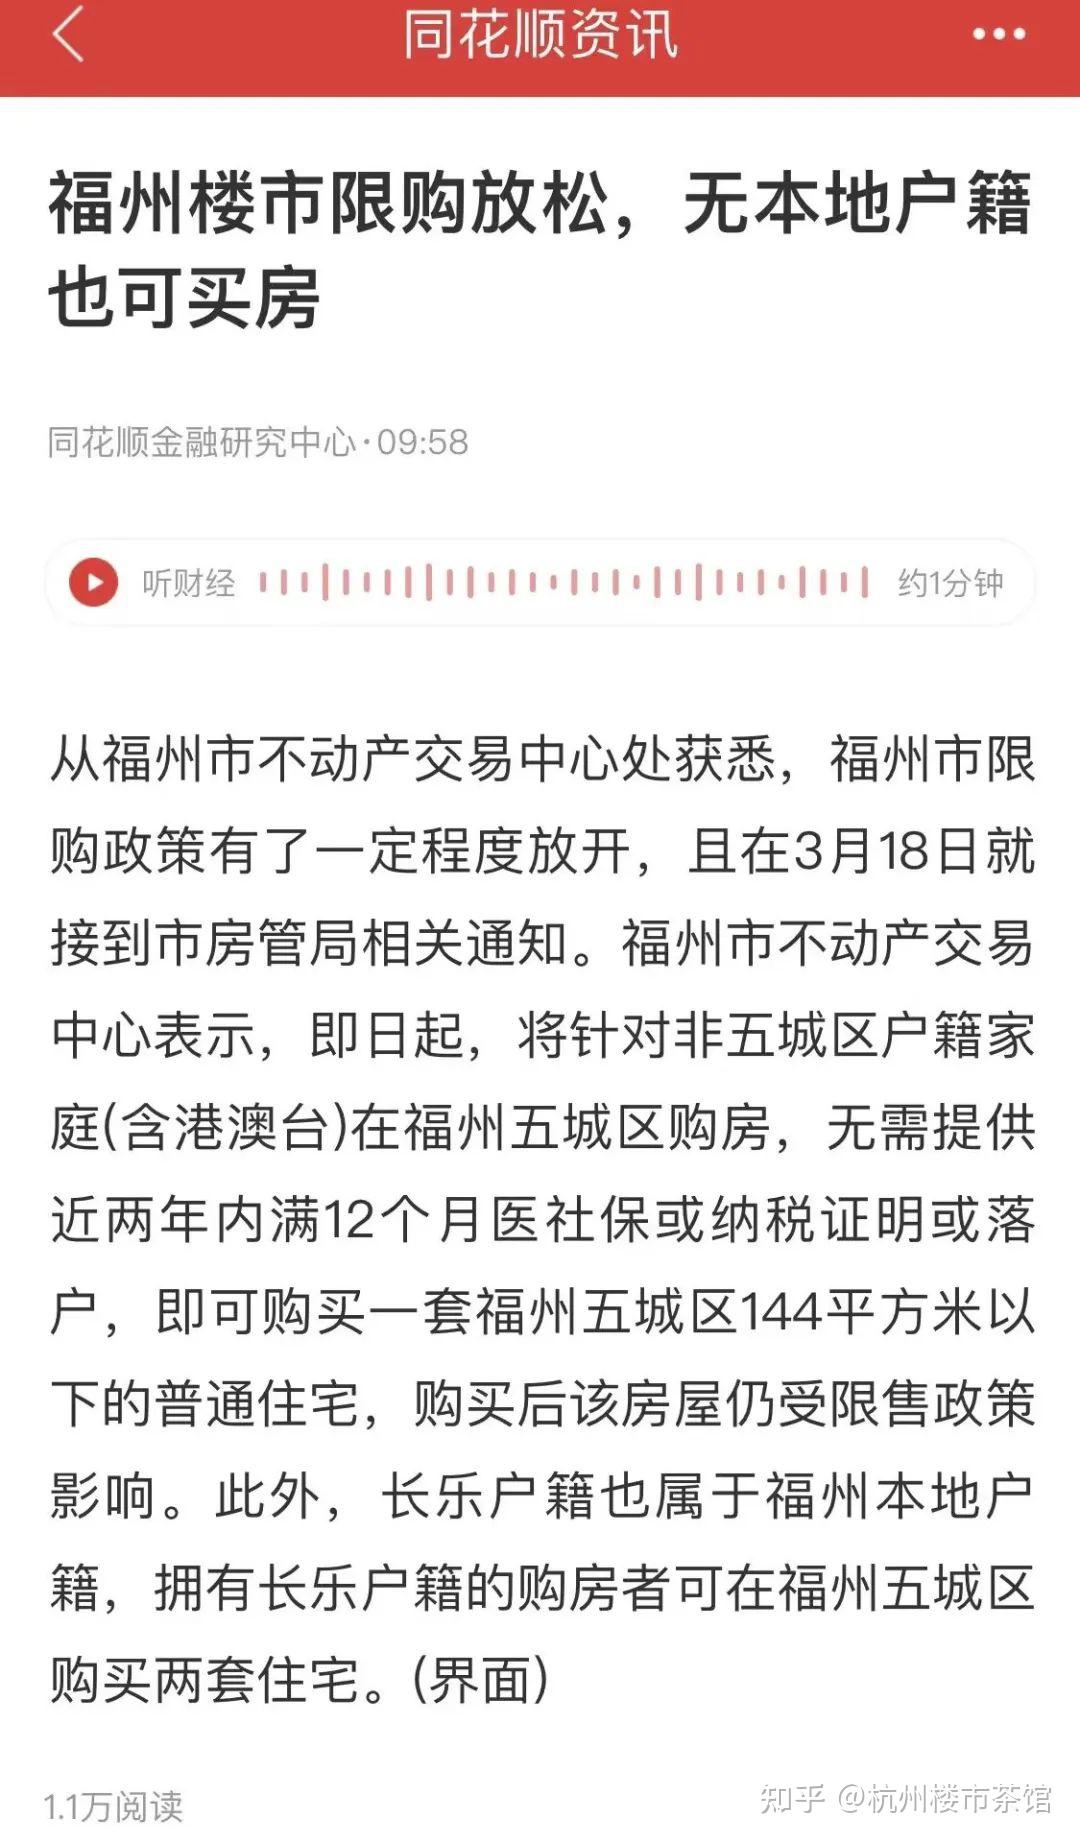 疑似 各大城市取消汽车限购 或将其废除_搜狐汽车_搜狐网